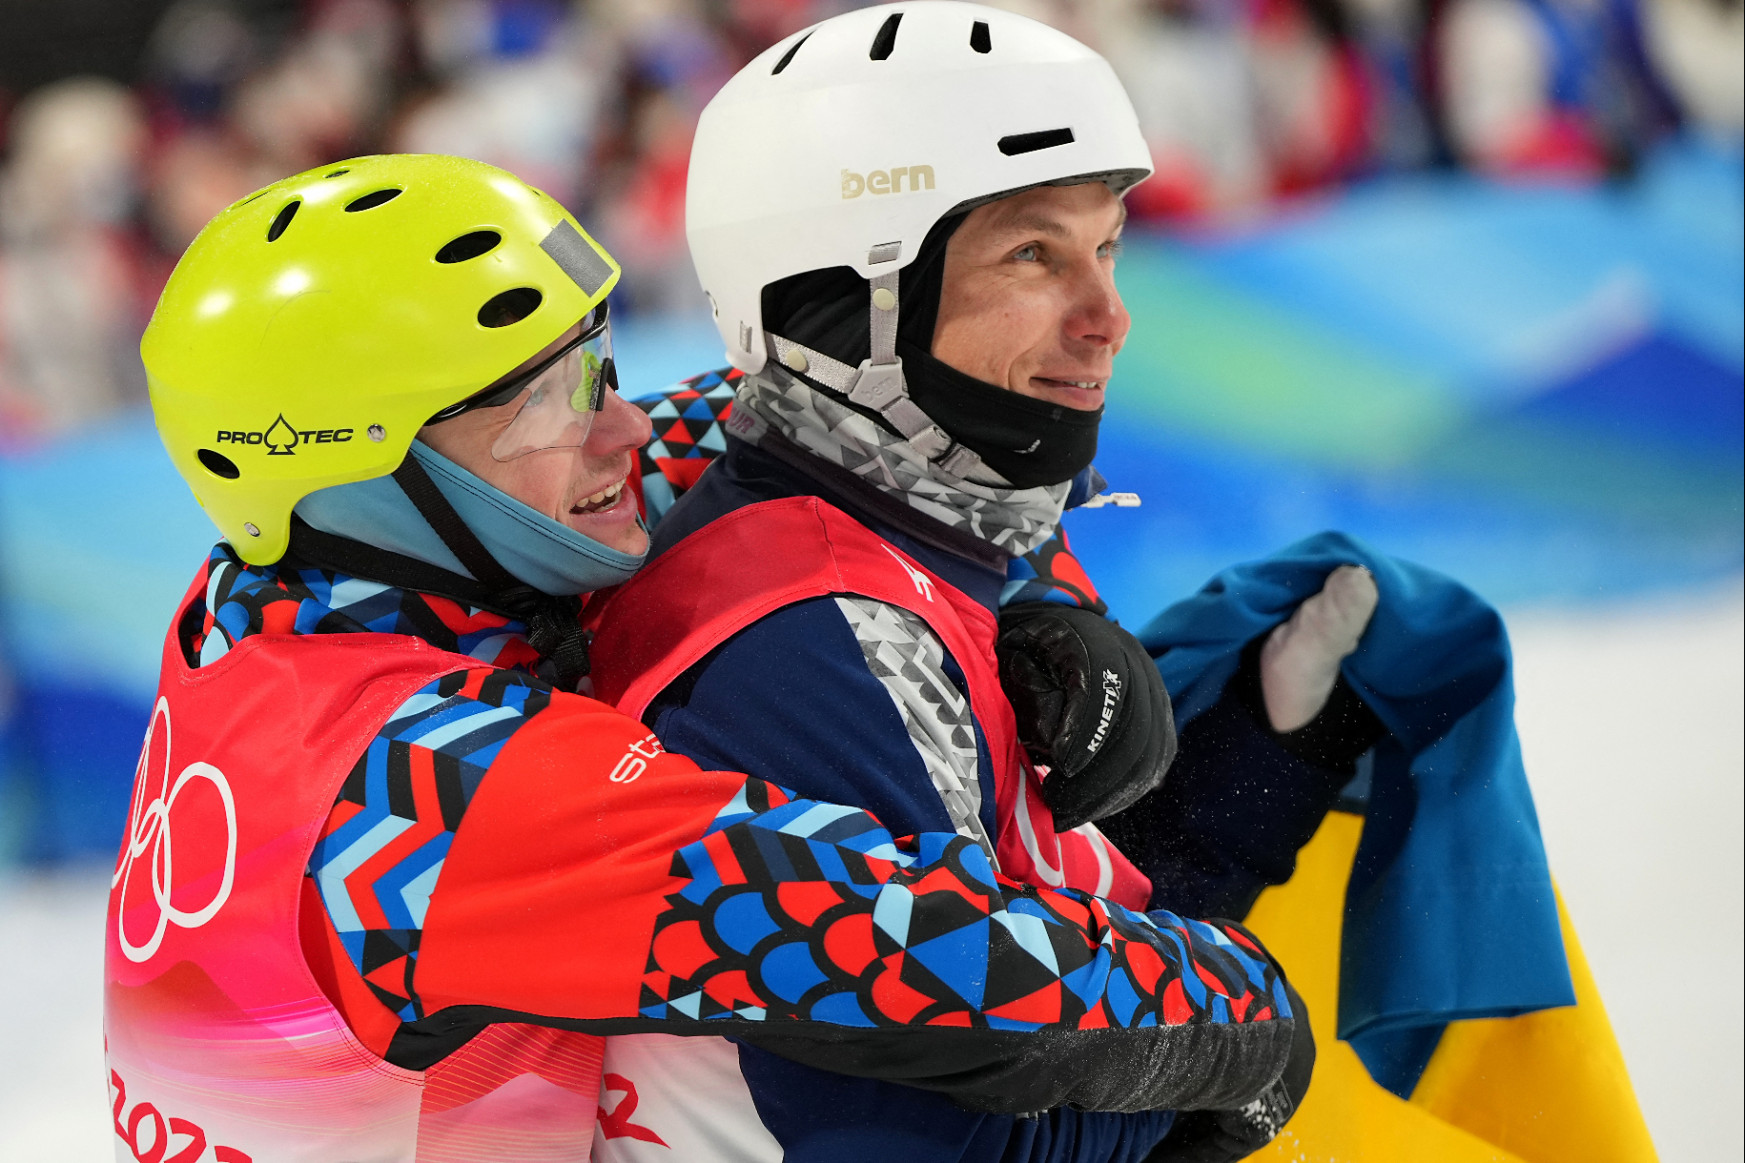 Botrány lett abból, hogy összeölelkezett az olimpiai érmes ukrán és az orosz síző